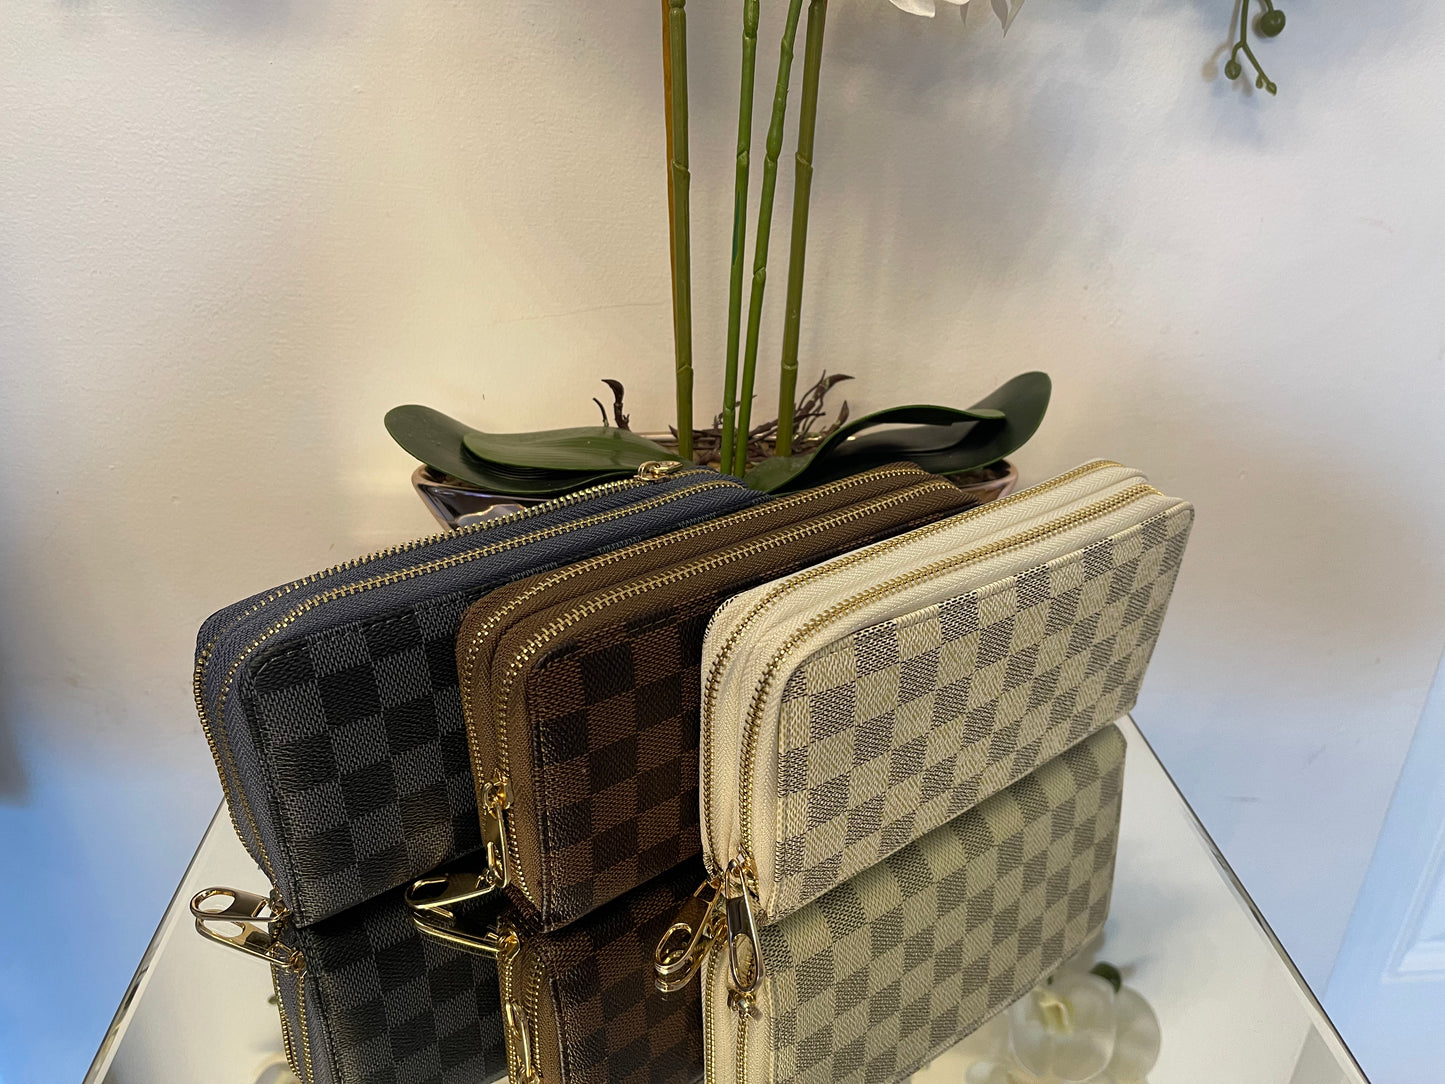 Square pattern purses